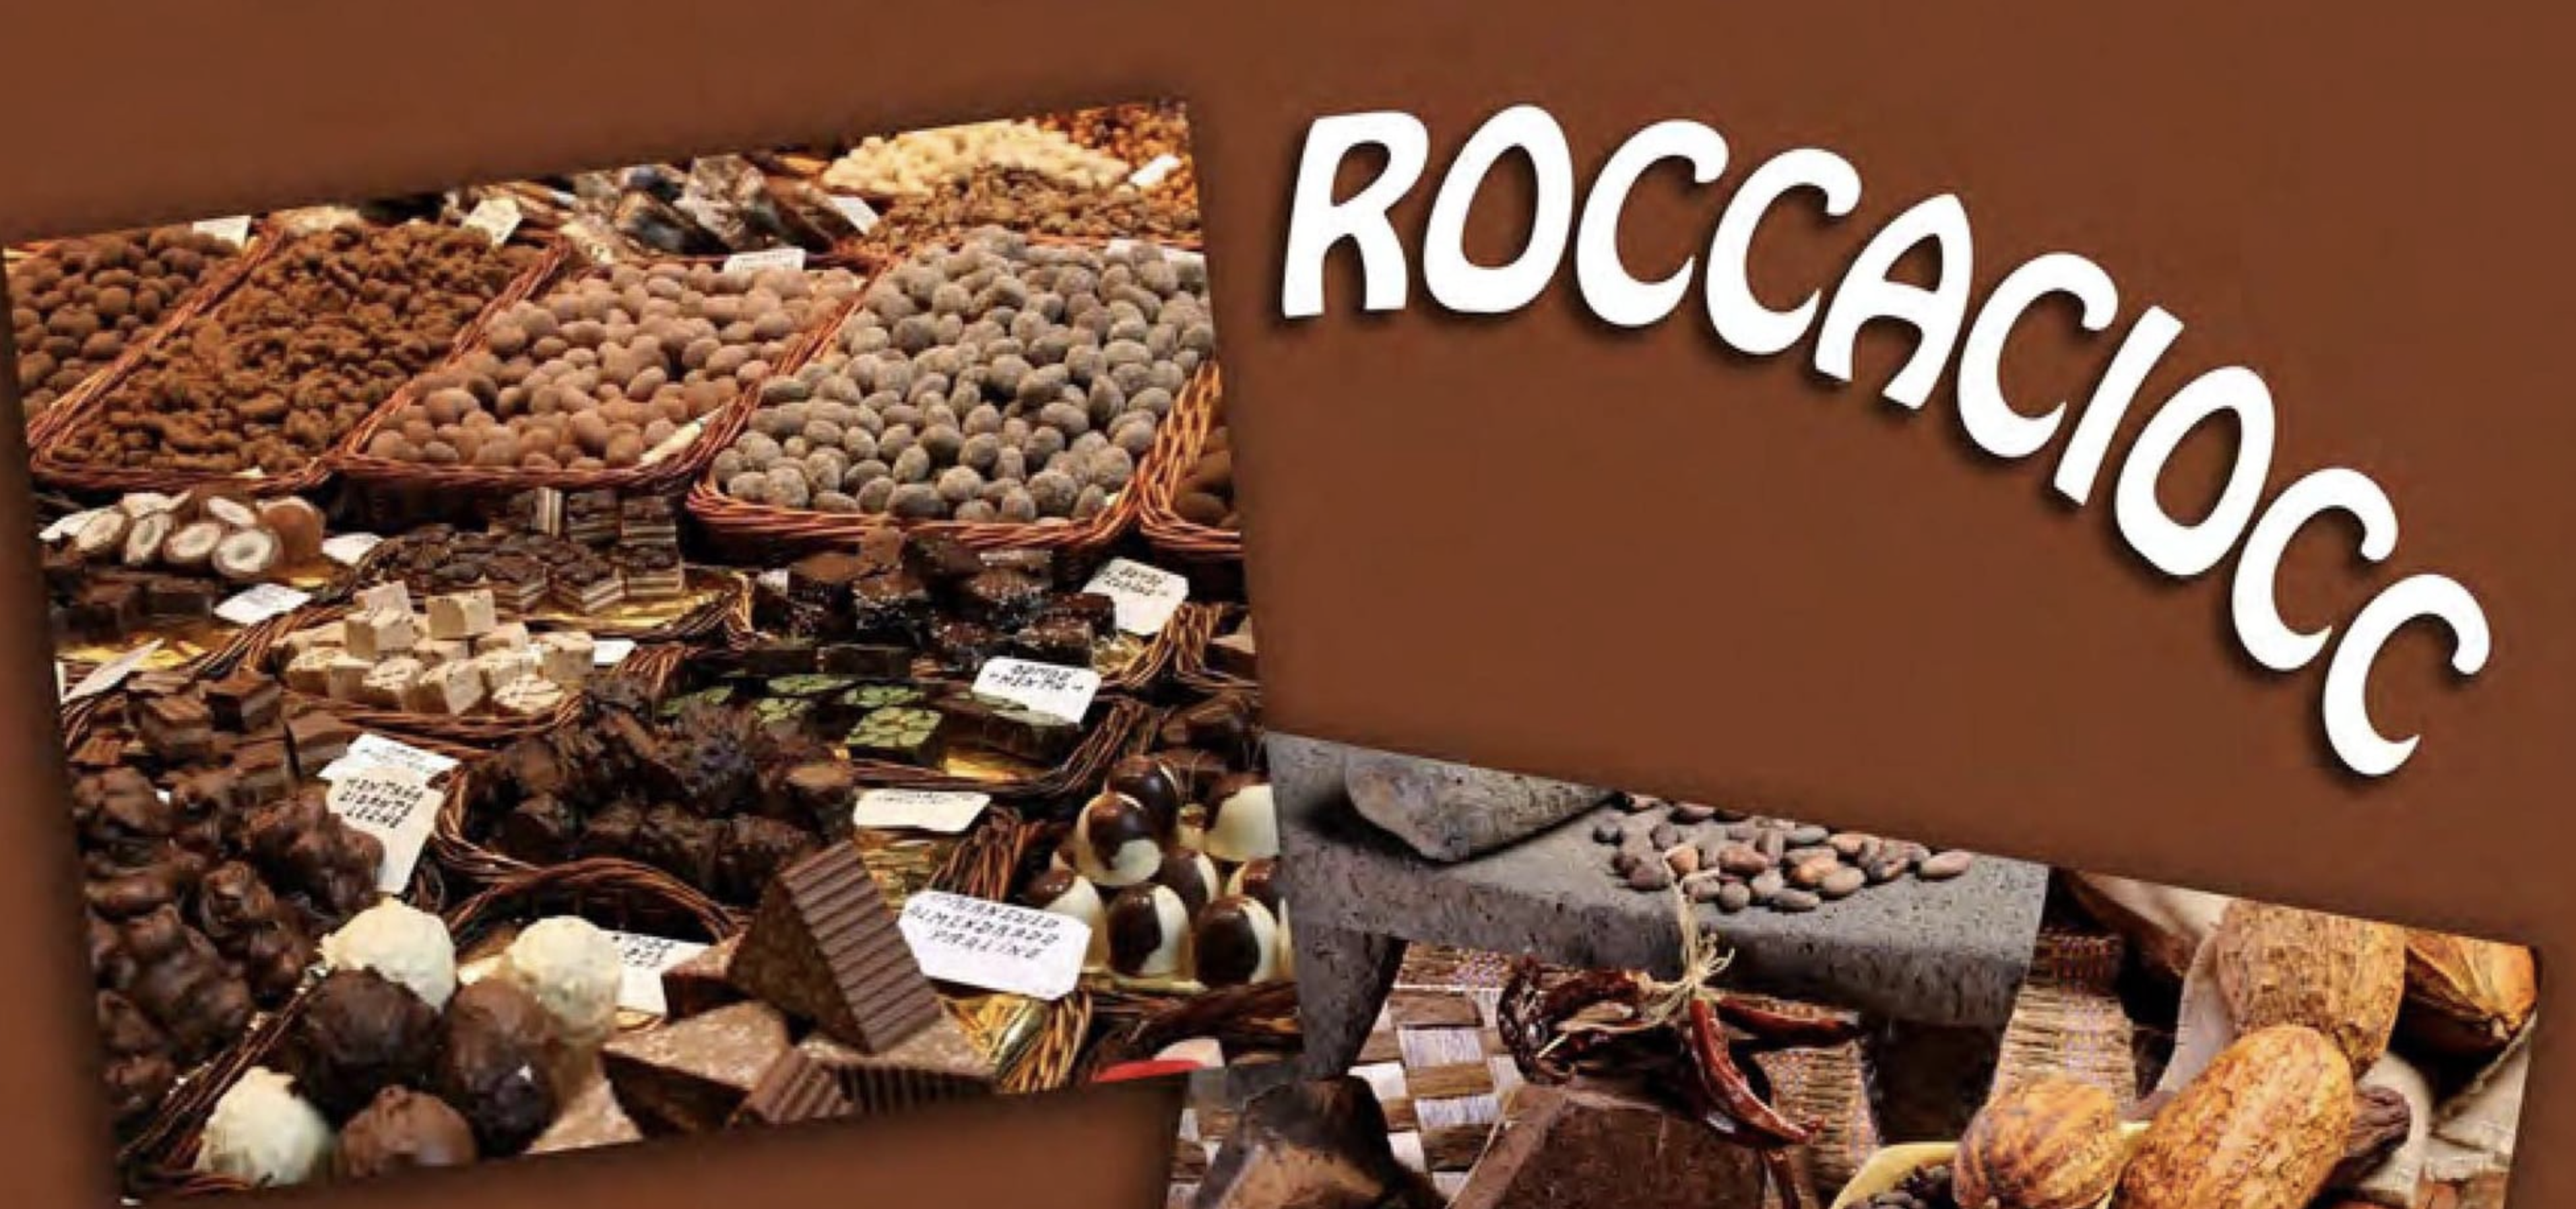 RoccaCiocc